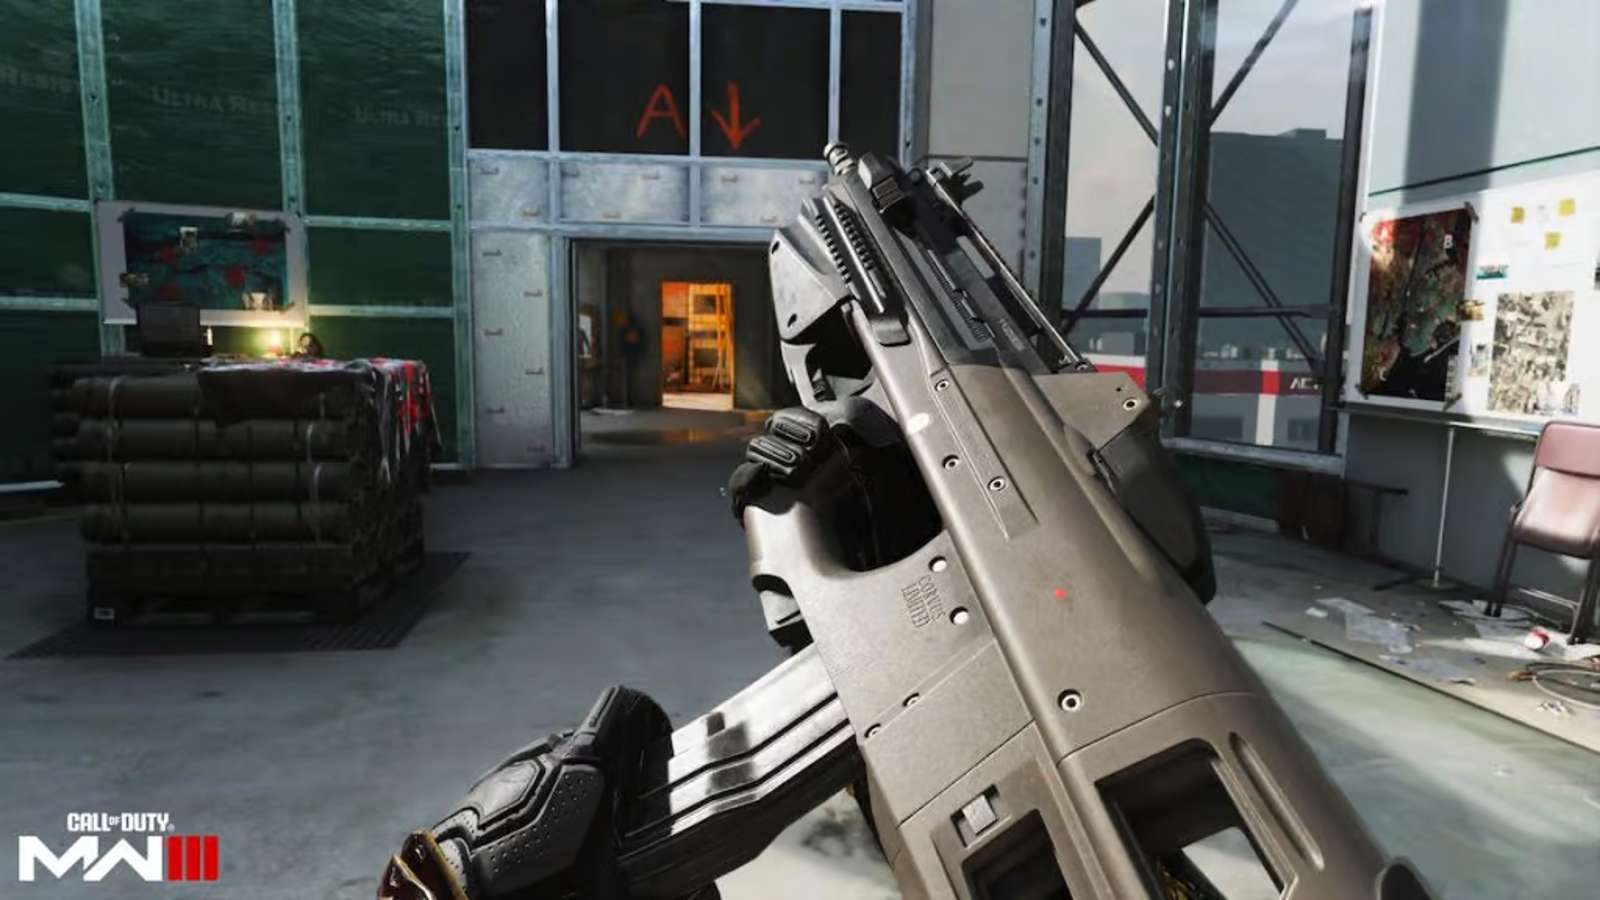 BP50 weapon inspect in Modern Warfare 3